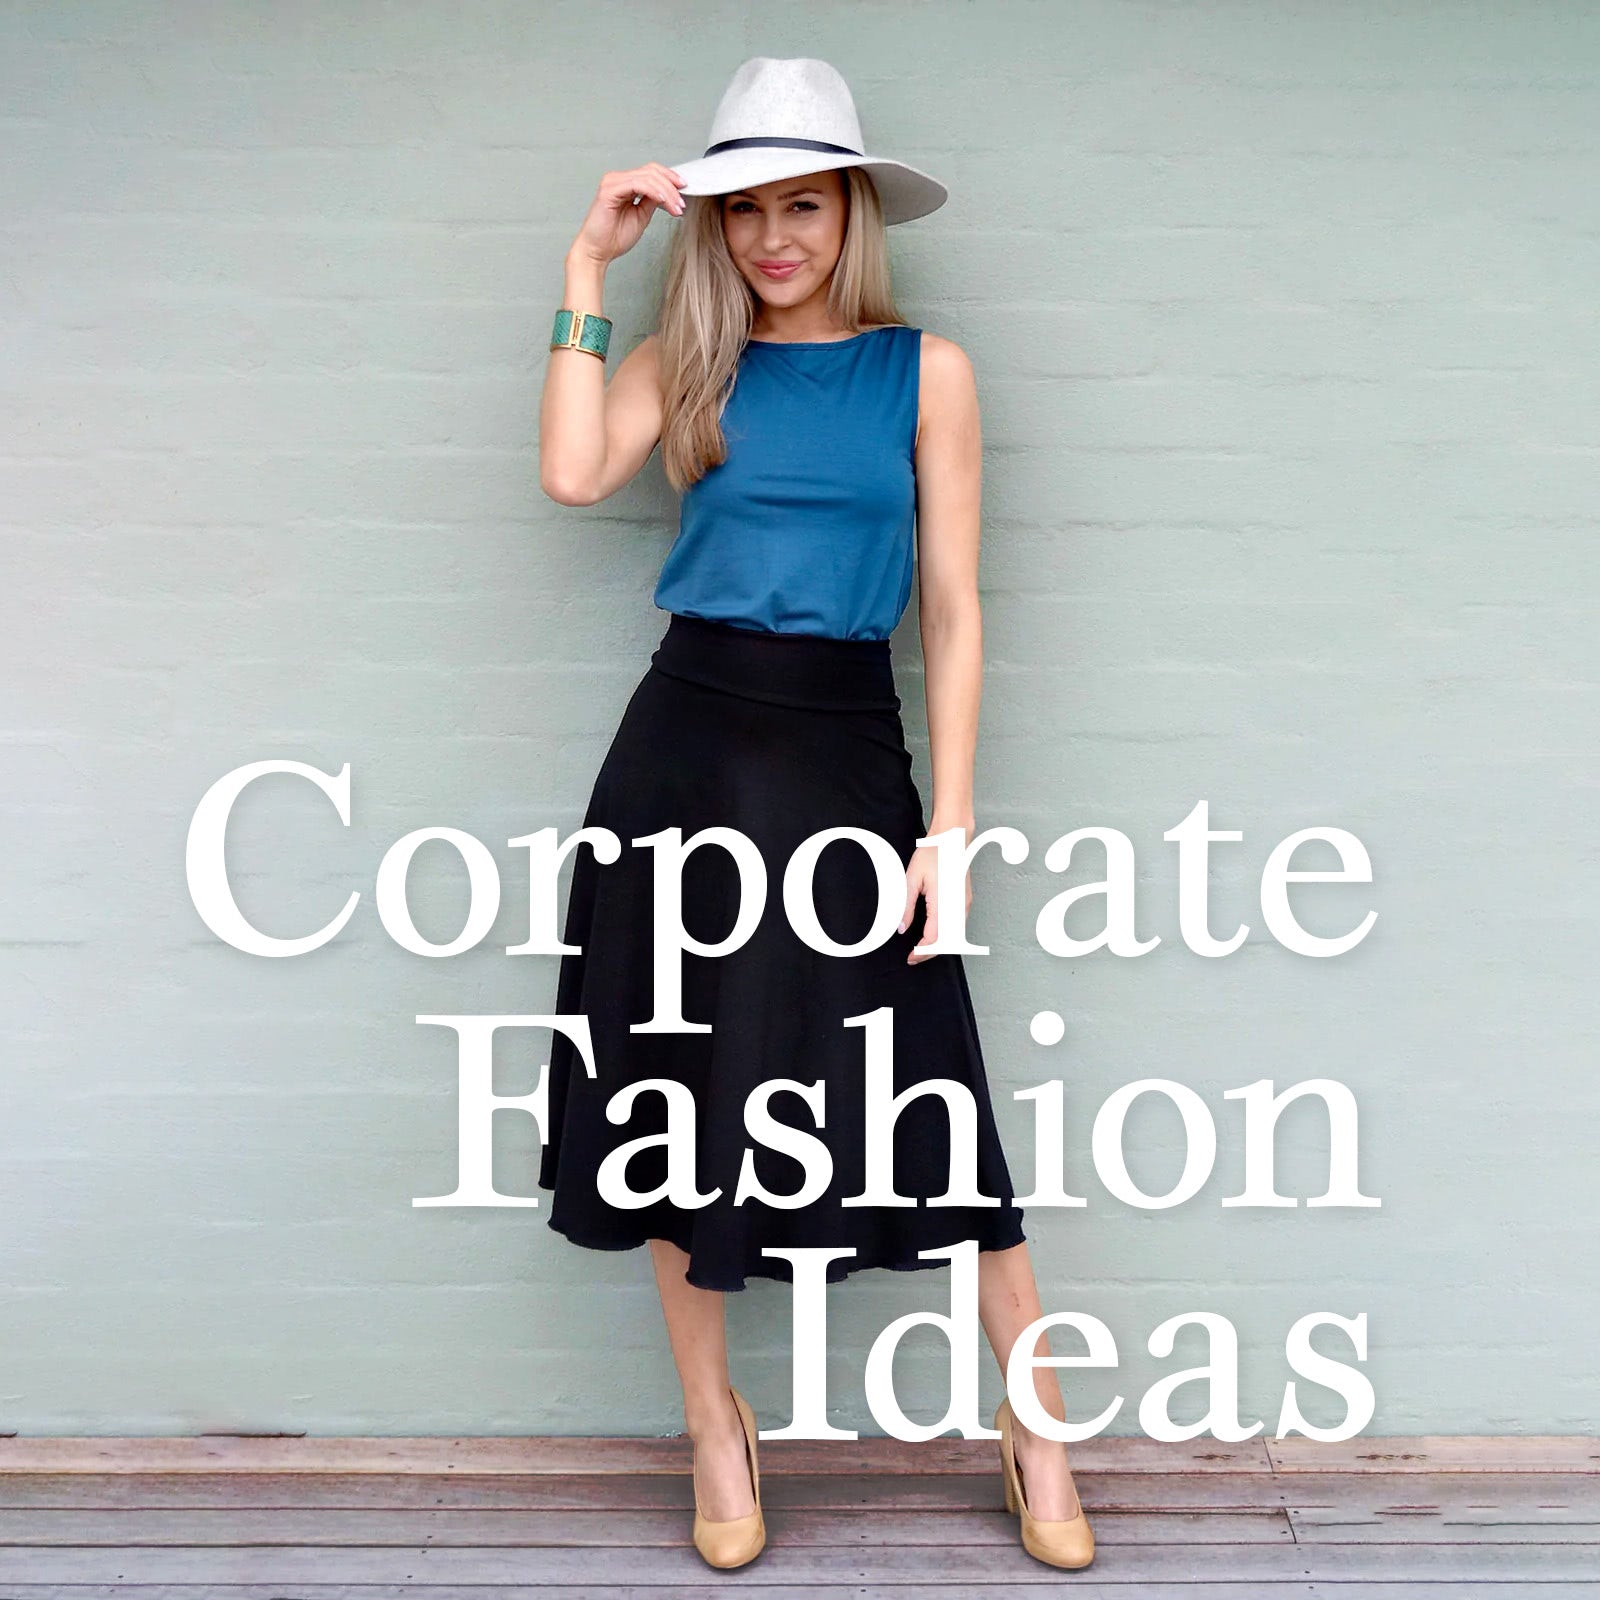 Corporate fashion ideas